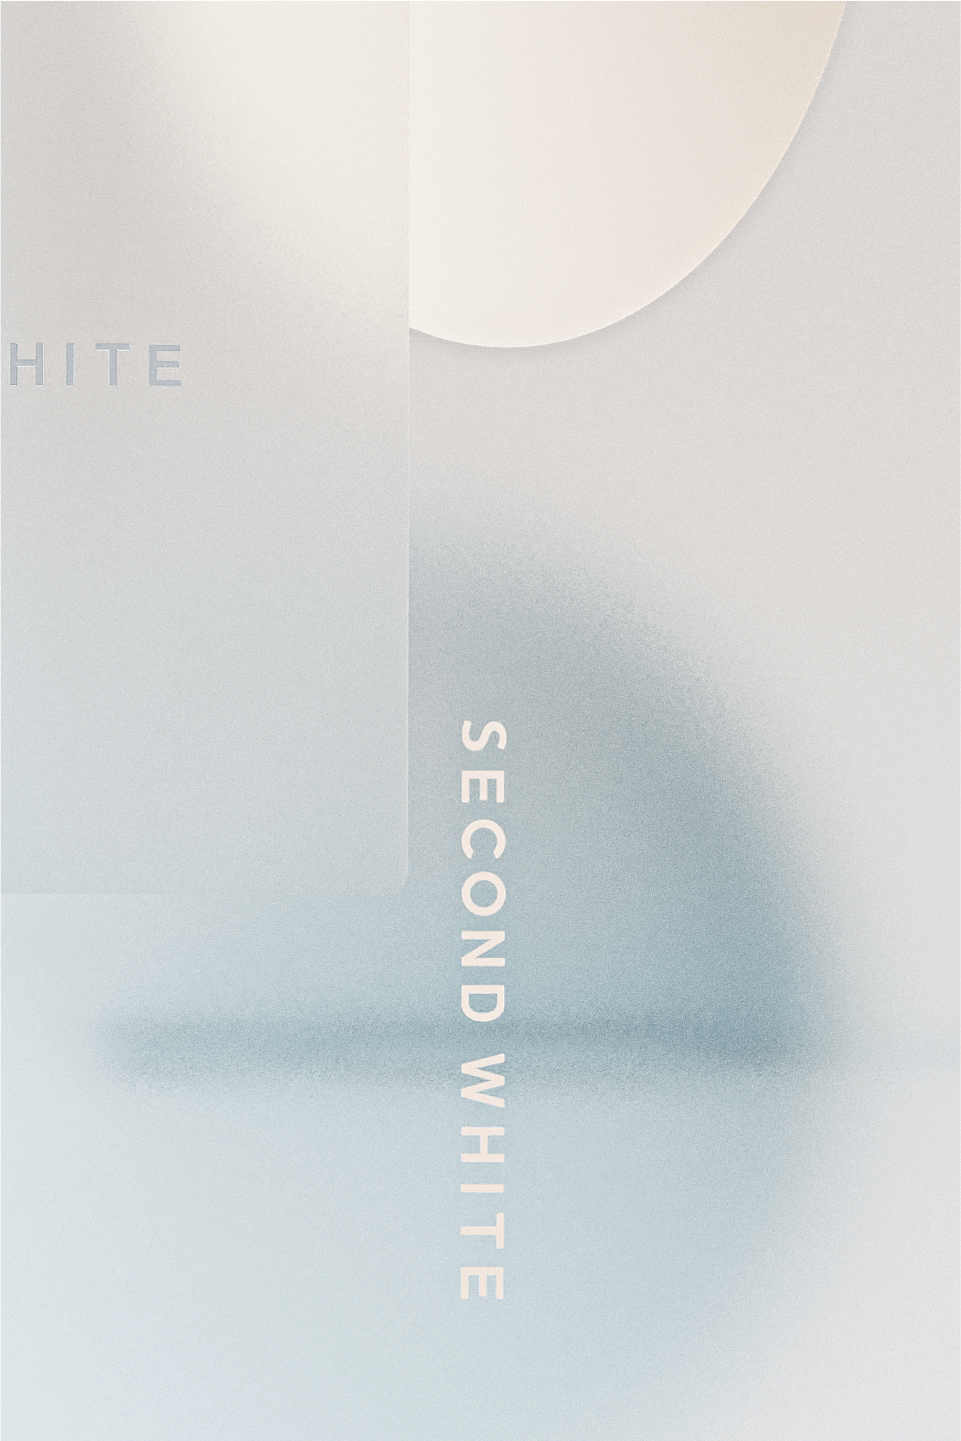 Second White，Ocean White，图形设计，展览设计，